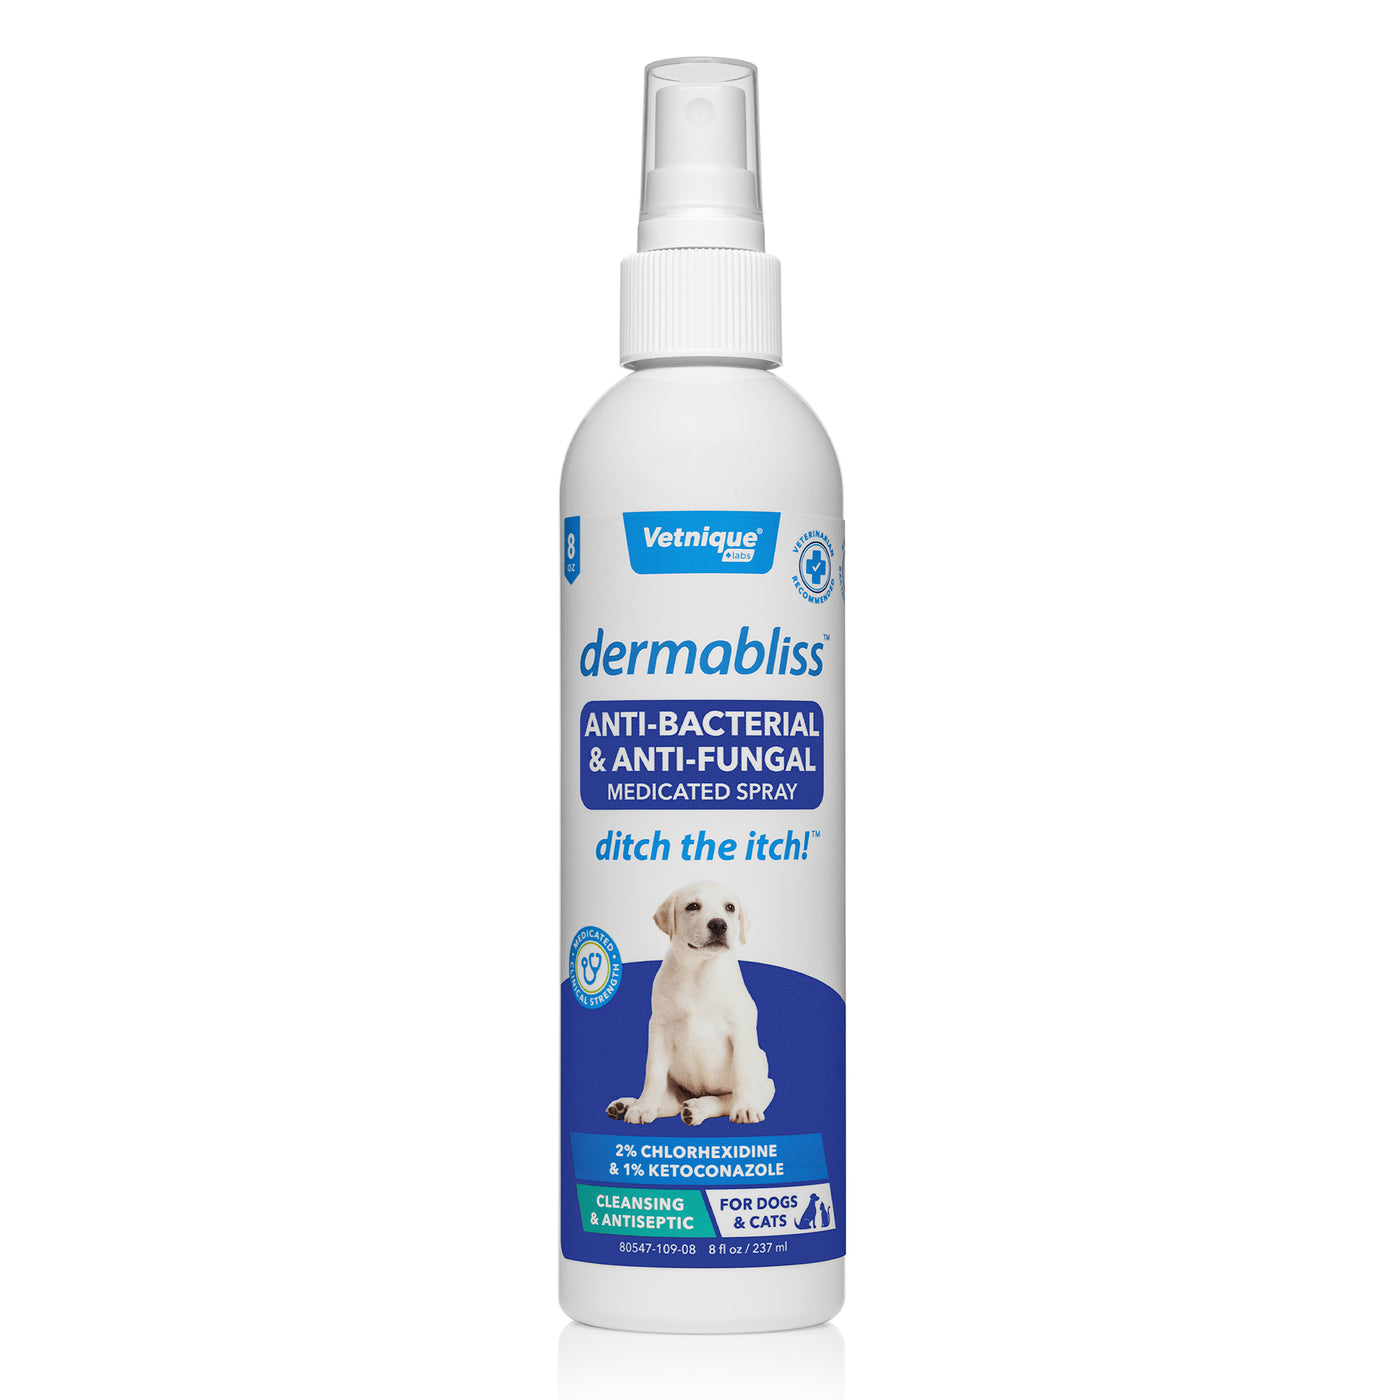 Dermabliss™ Anti-Bacterial & Anti-Fungal Bundle (Spray & Wipes) - Save 15%!